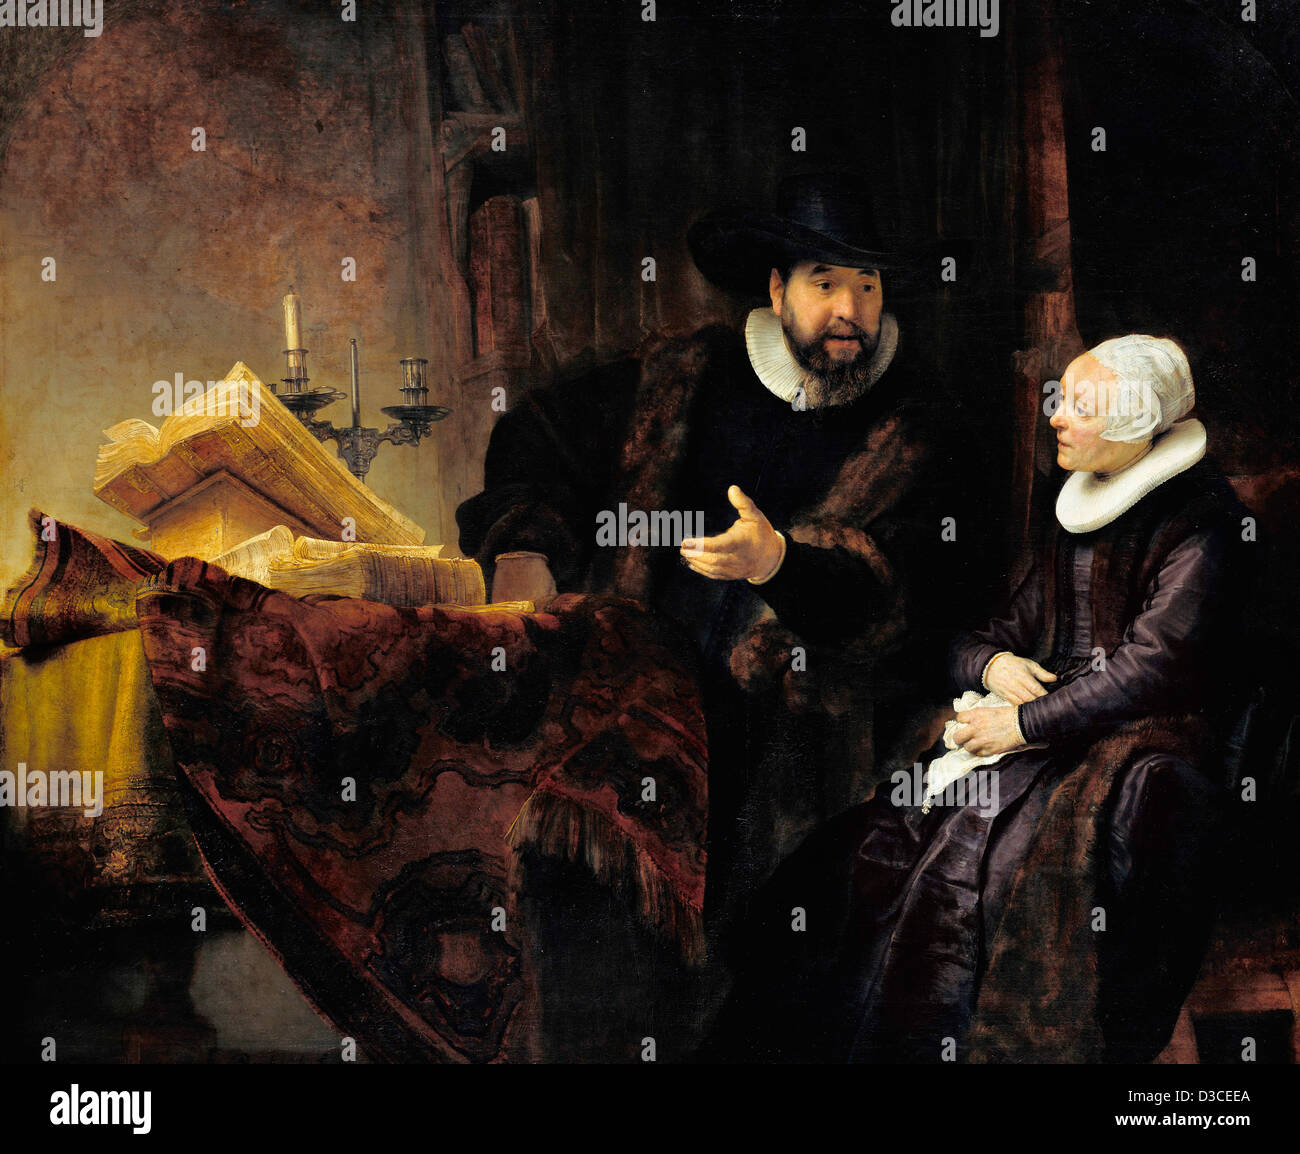 Rembrandt van Rijn, die Mennonitische Prediger Anbetung und seine Frau. 1641 Öl auf Leinwand. Barocke. Gemäldegalerie, Berlin. Stockfoto